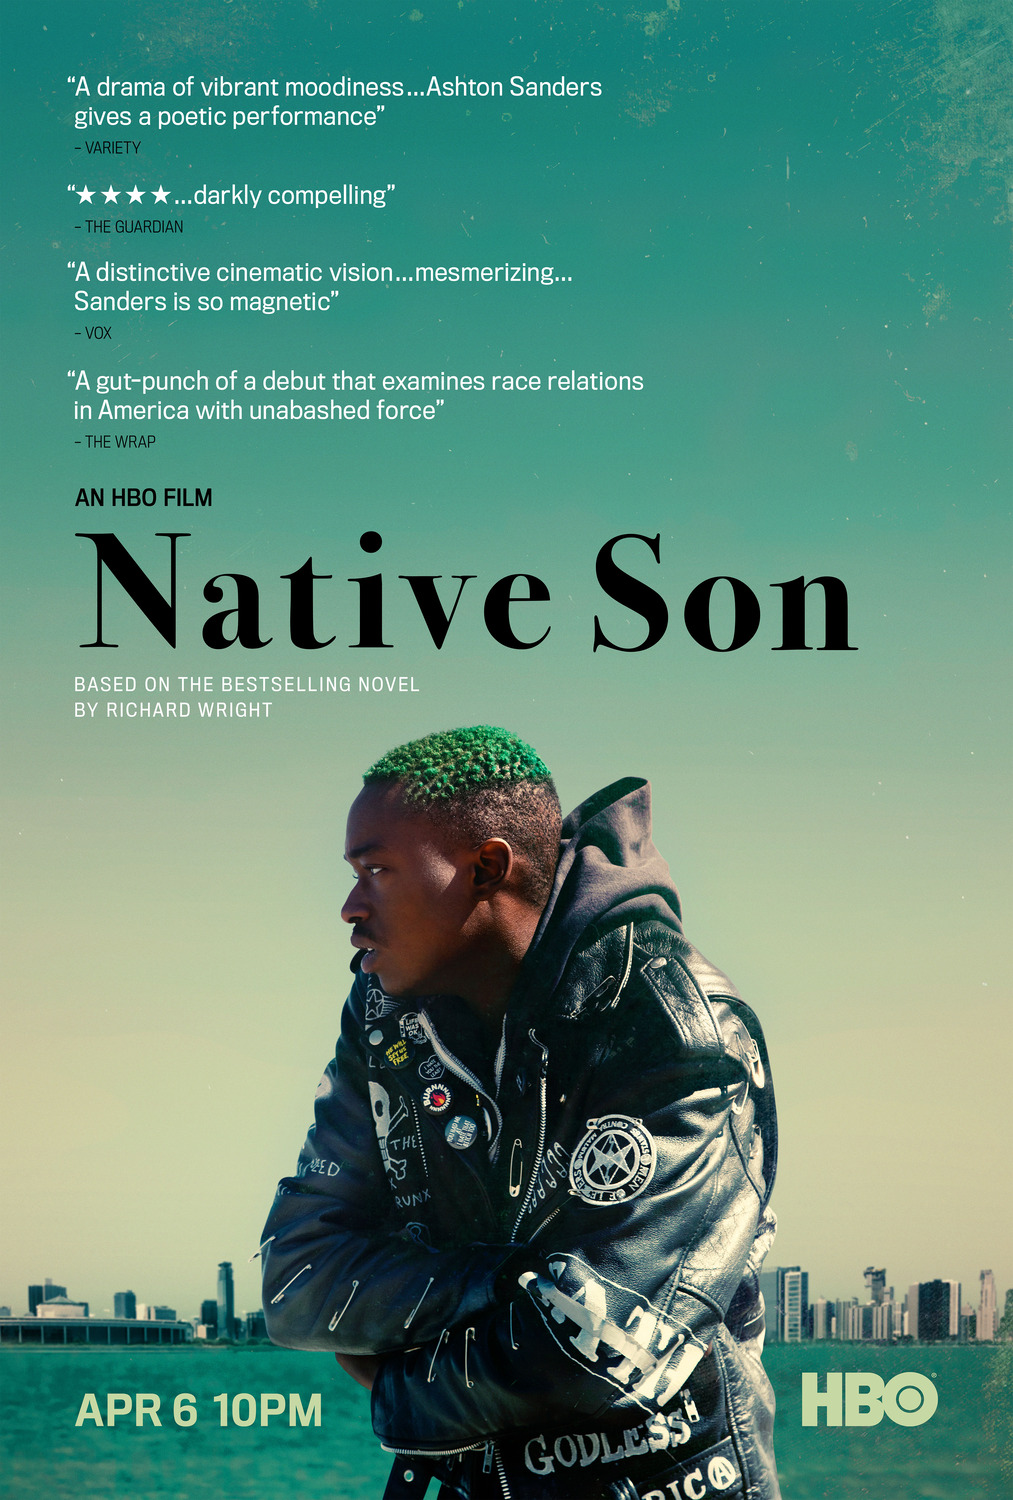 Nonton film Native Son layarkaca21 indoxx1 ganool online streaming terbaru